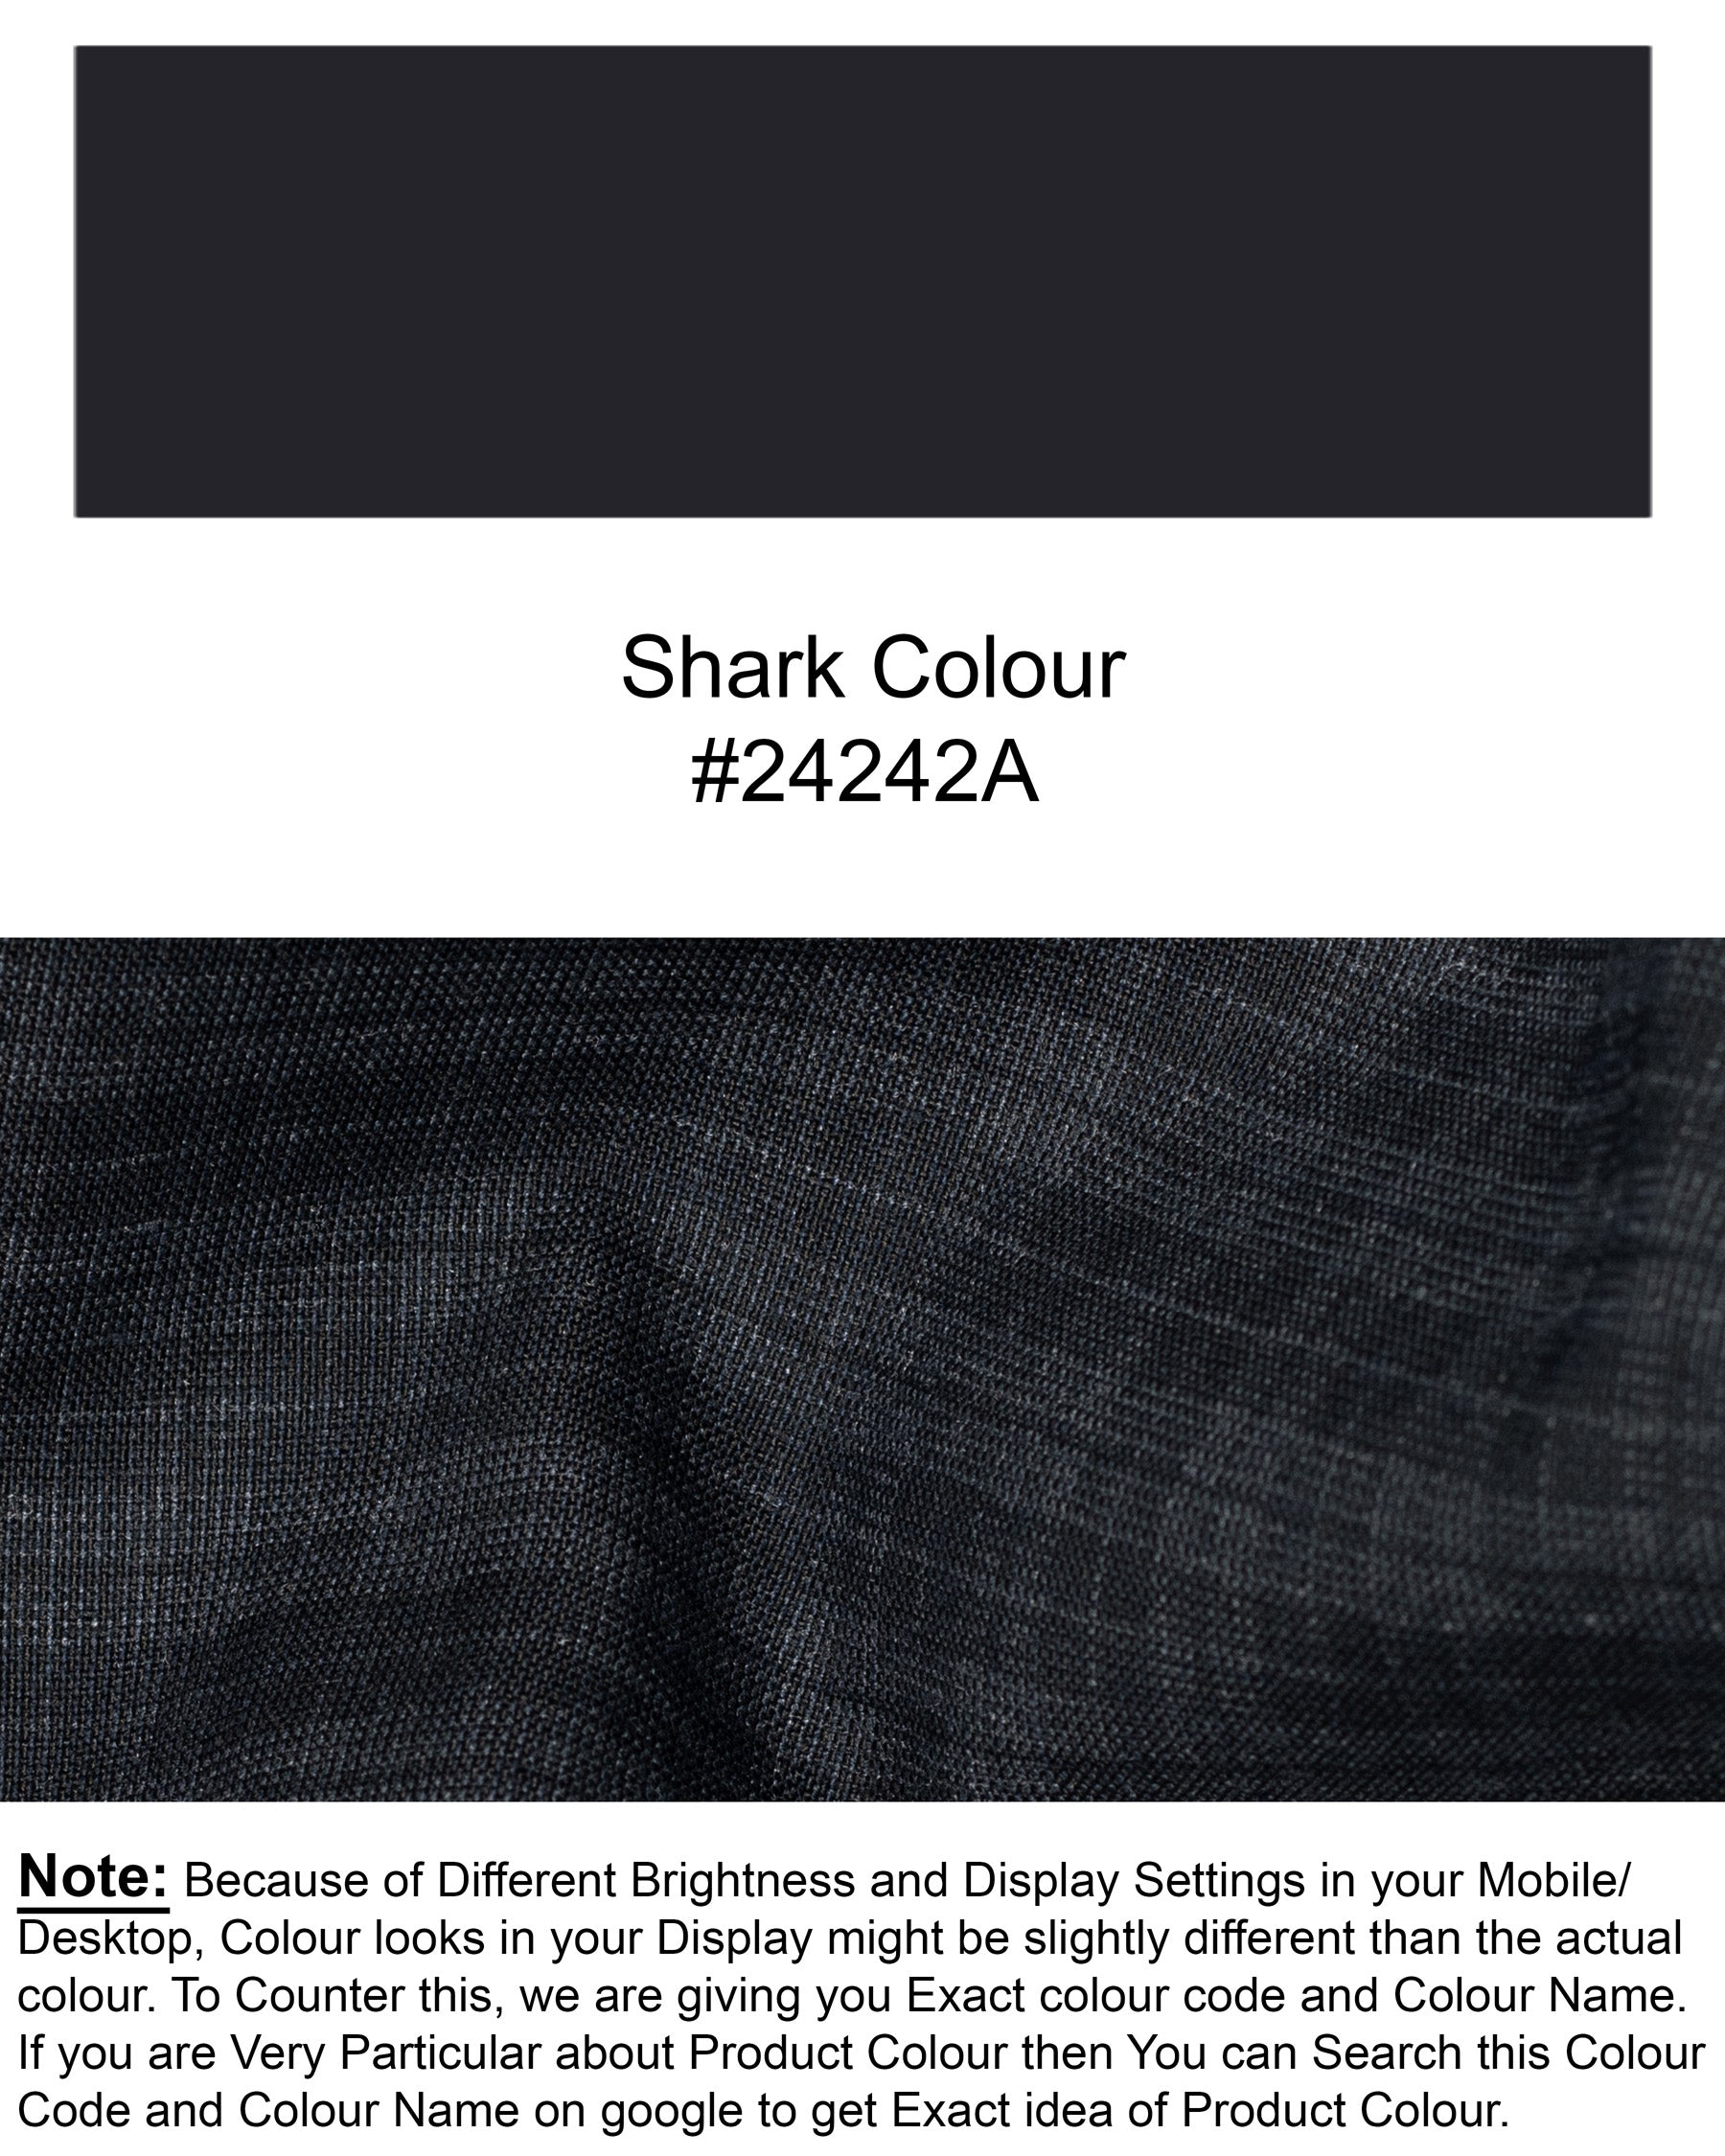 Shark Grey Plaid Wool Rich Blazer BL1325-SB-36, BL1325-SB-38, BL1325-SB-40, BL1325-SB-42, BL1325-SB-44, BL1325-SB-46, BL1325-SB-48, BL1325-SB-50, BL1325-SB-52, BL1325-SB-54, BL1325-SB-56, BL1325-SB-58, BL1325-SB-60